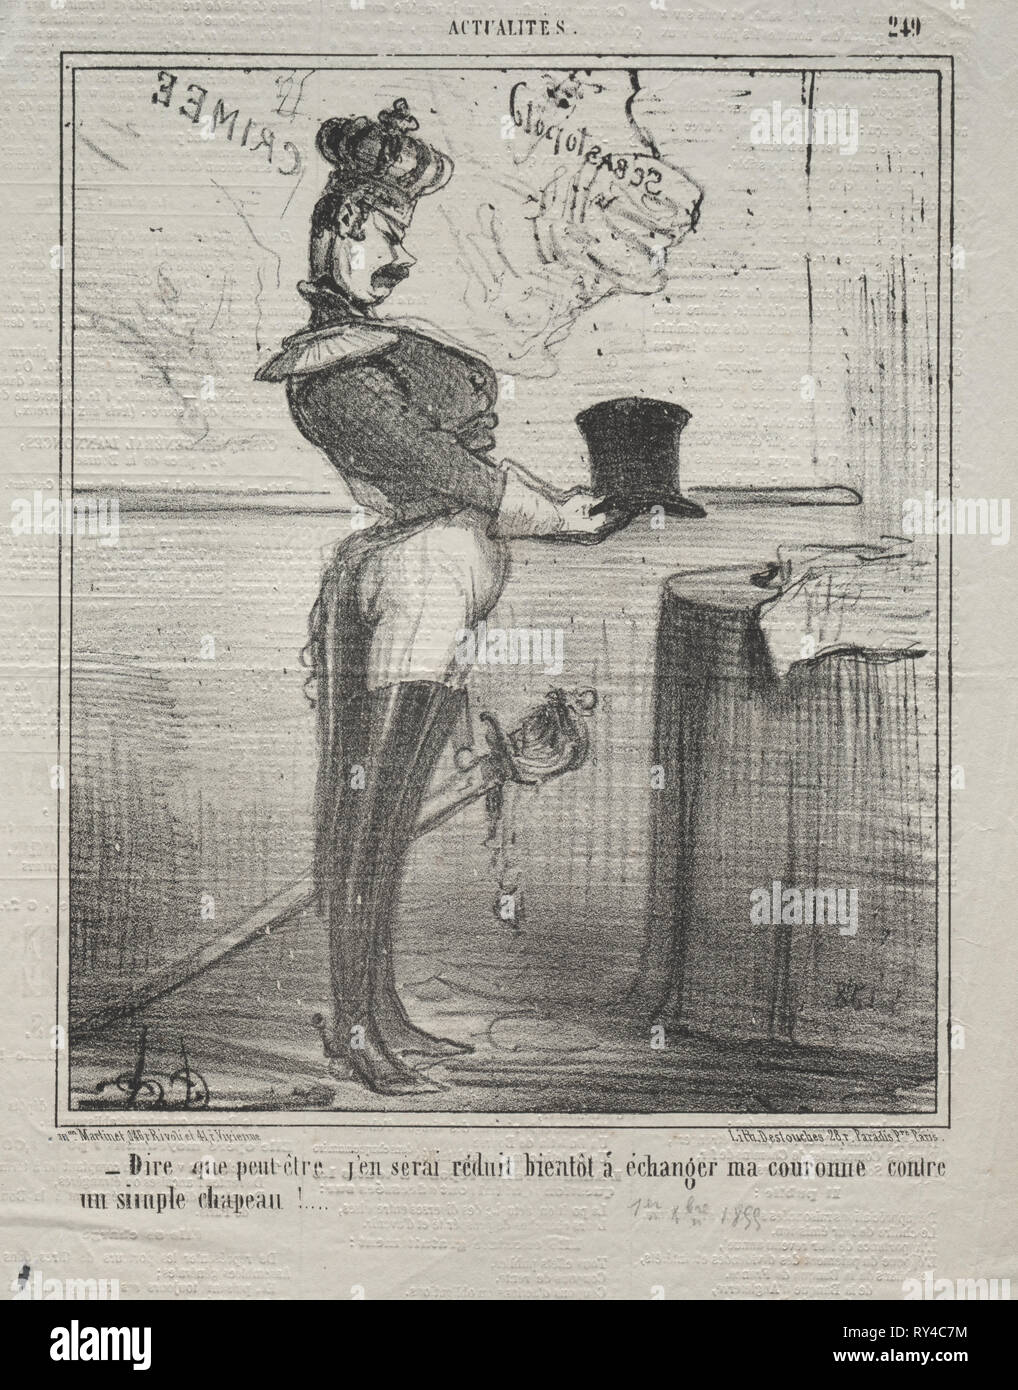 Pubblicato in le Charivari (1 dicembre 1855): Actualities (n. 249): dicono che io presto sarà ridotto a scambiare la mia corona per un semplice cappello!, 1855. Honoré Daumier (Francese, 1808-1879). Litografia; foglio: 32,4 x 25,2 cm (12 3/4 x 9 15/16 in.); immagine: 24,2 x 20 cm (9 1/2 x 7 7/8 in Foto Stock